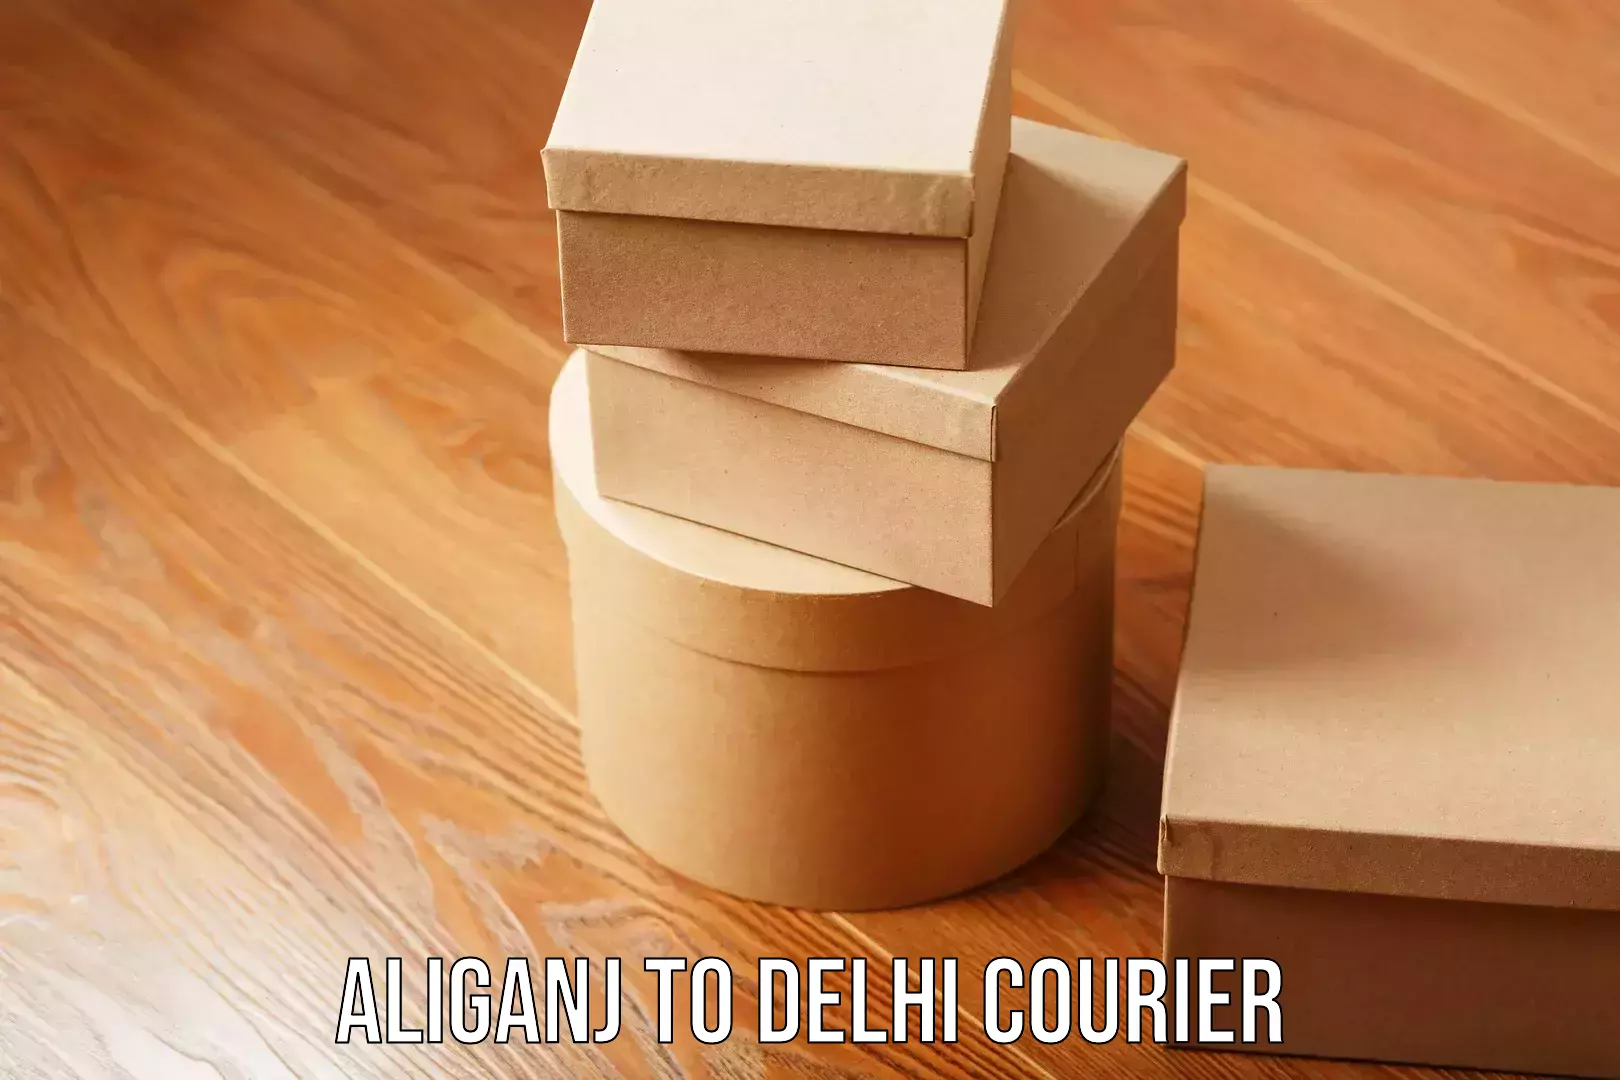 Premium courier services Aliganj to Delhi